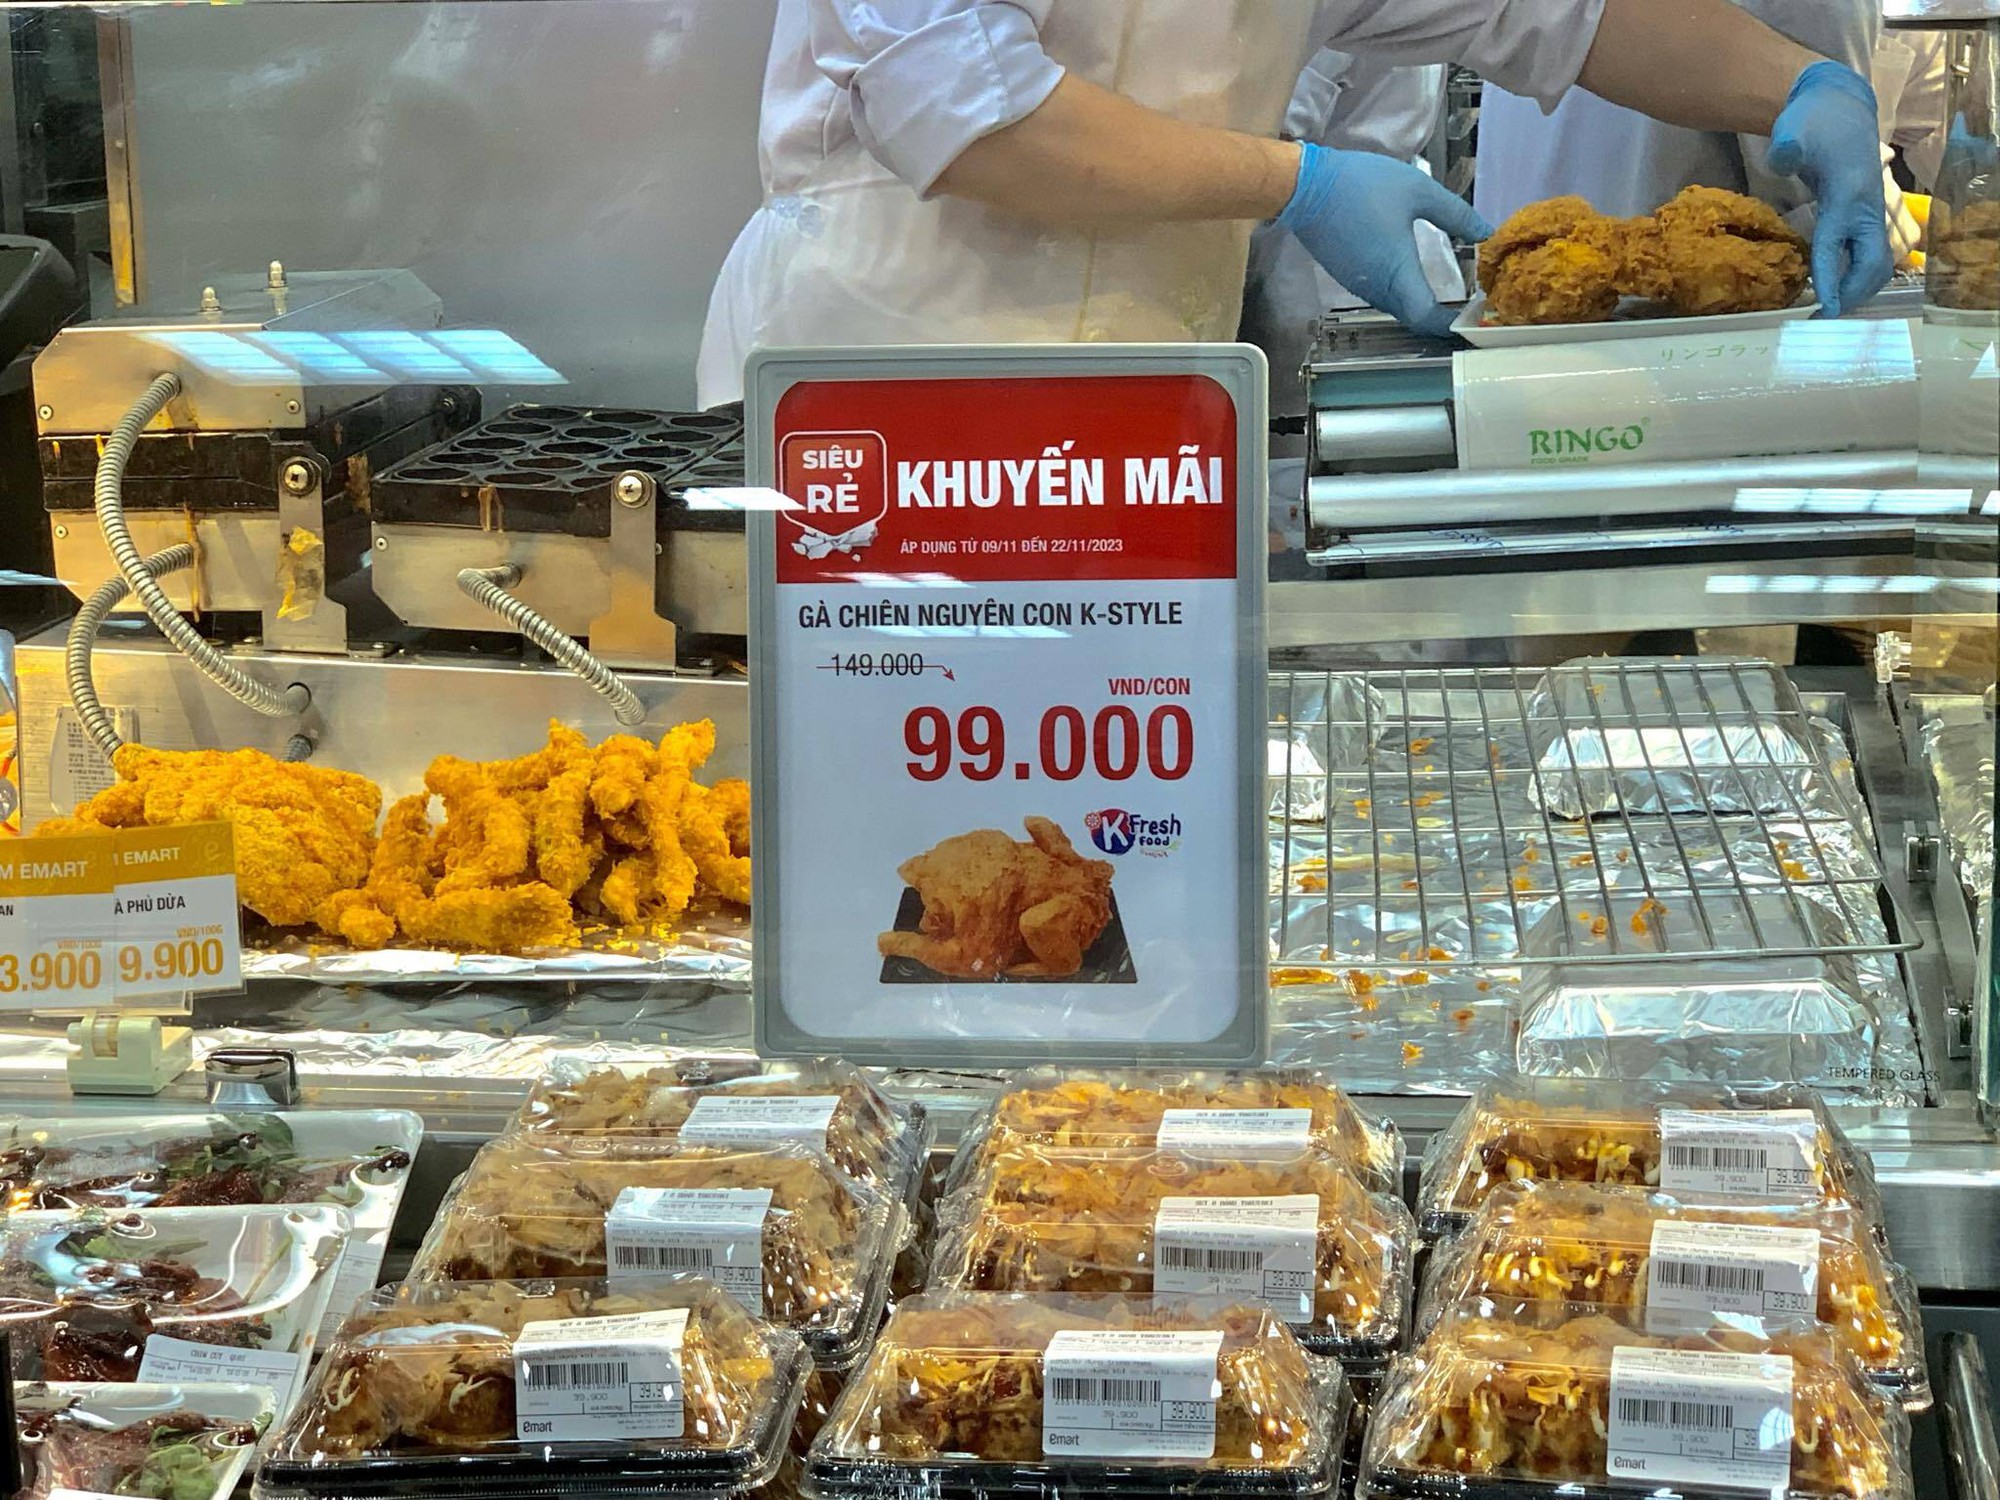 Xếp hàng chờ mua gà rán nguyên con 99.000 đồng - Ảnh 2.